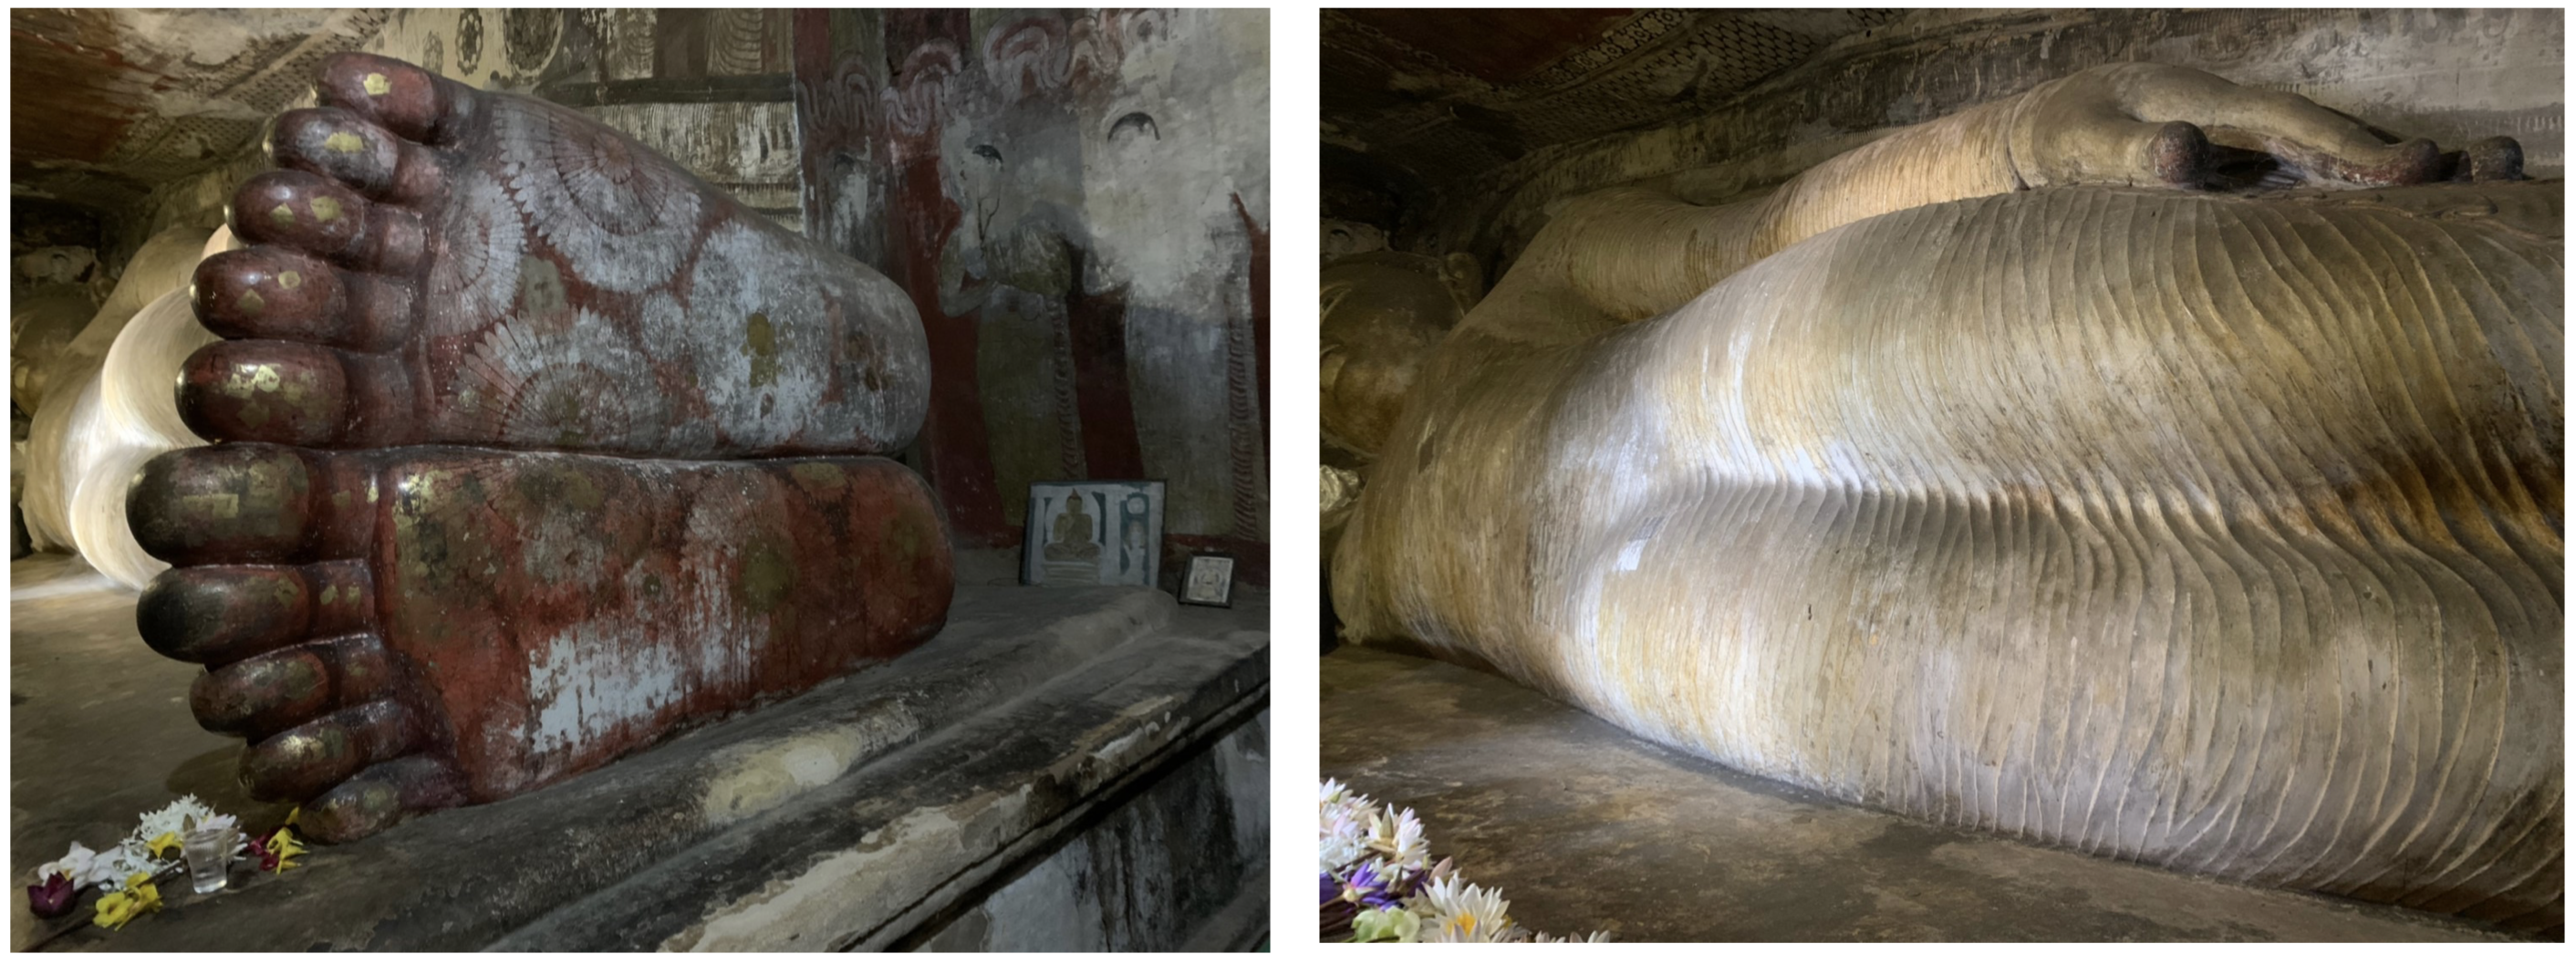 ダンブッラ石窟寺院の第1窟の石像の足